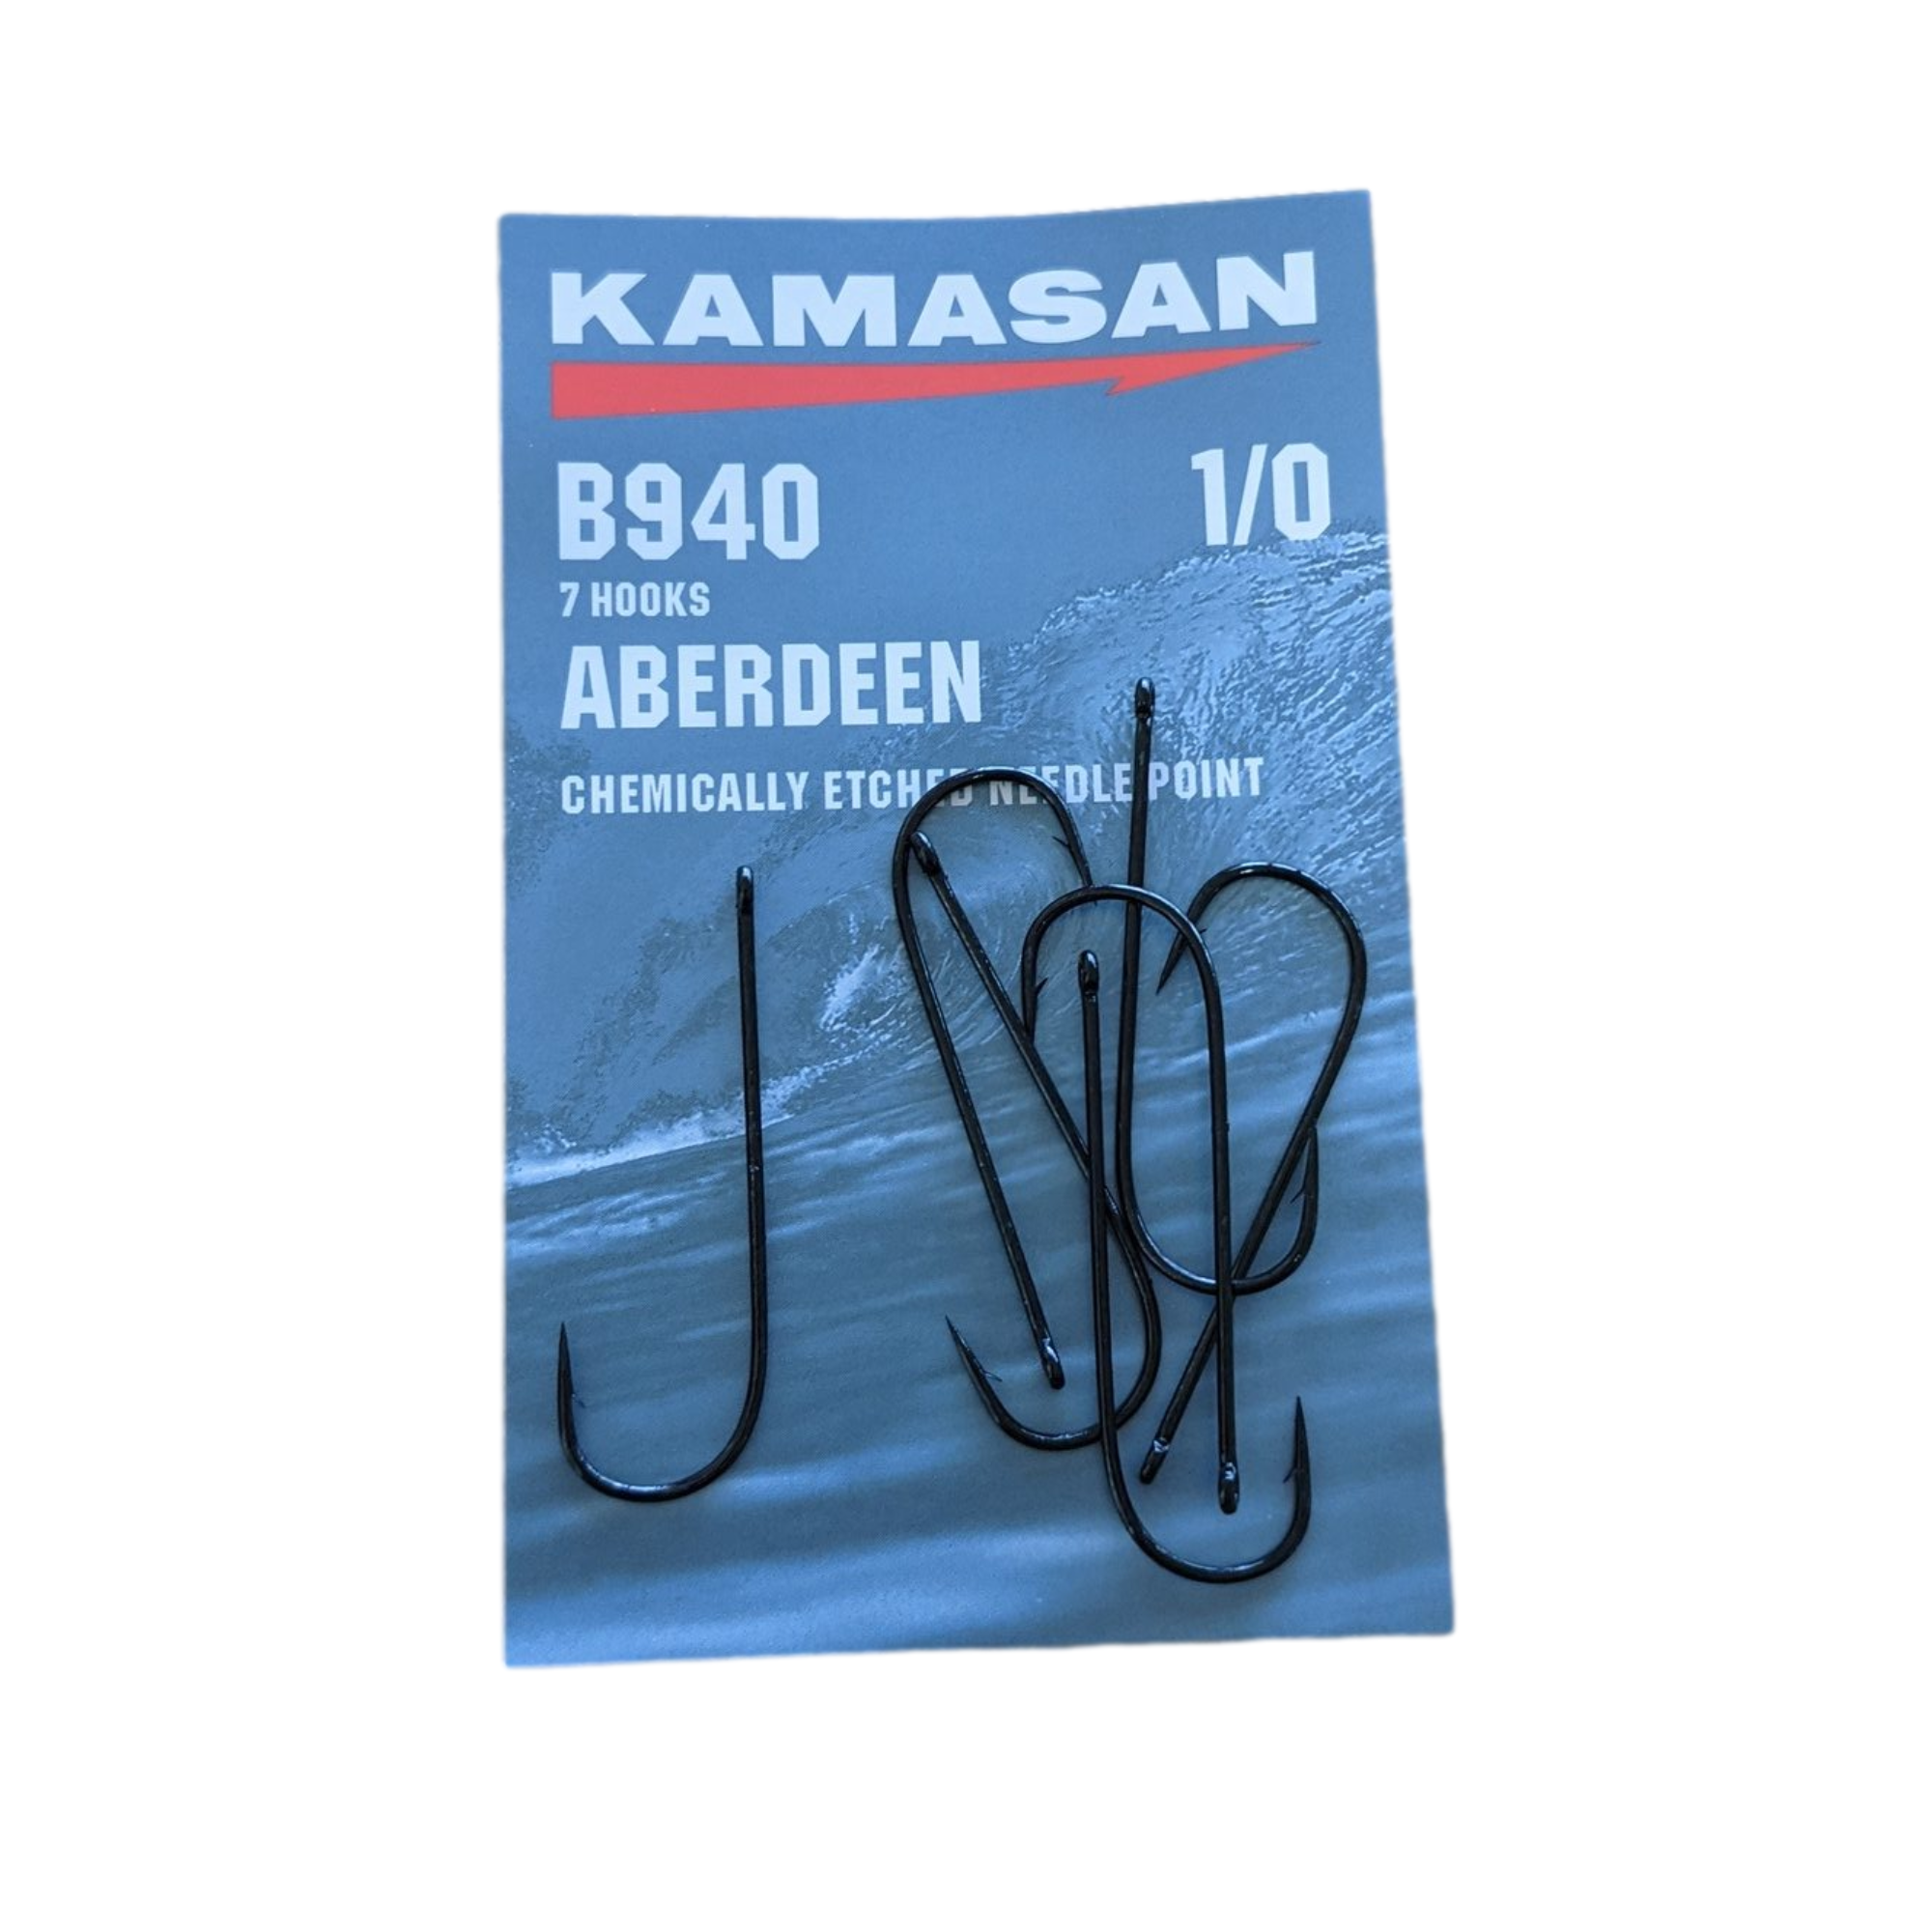 Kamasan Sea Fishing Hooks Range of Sizes and Hook Styles B940 B940S B950  B950U